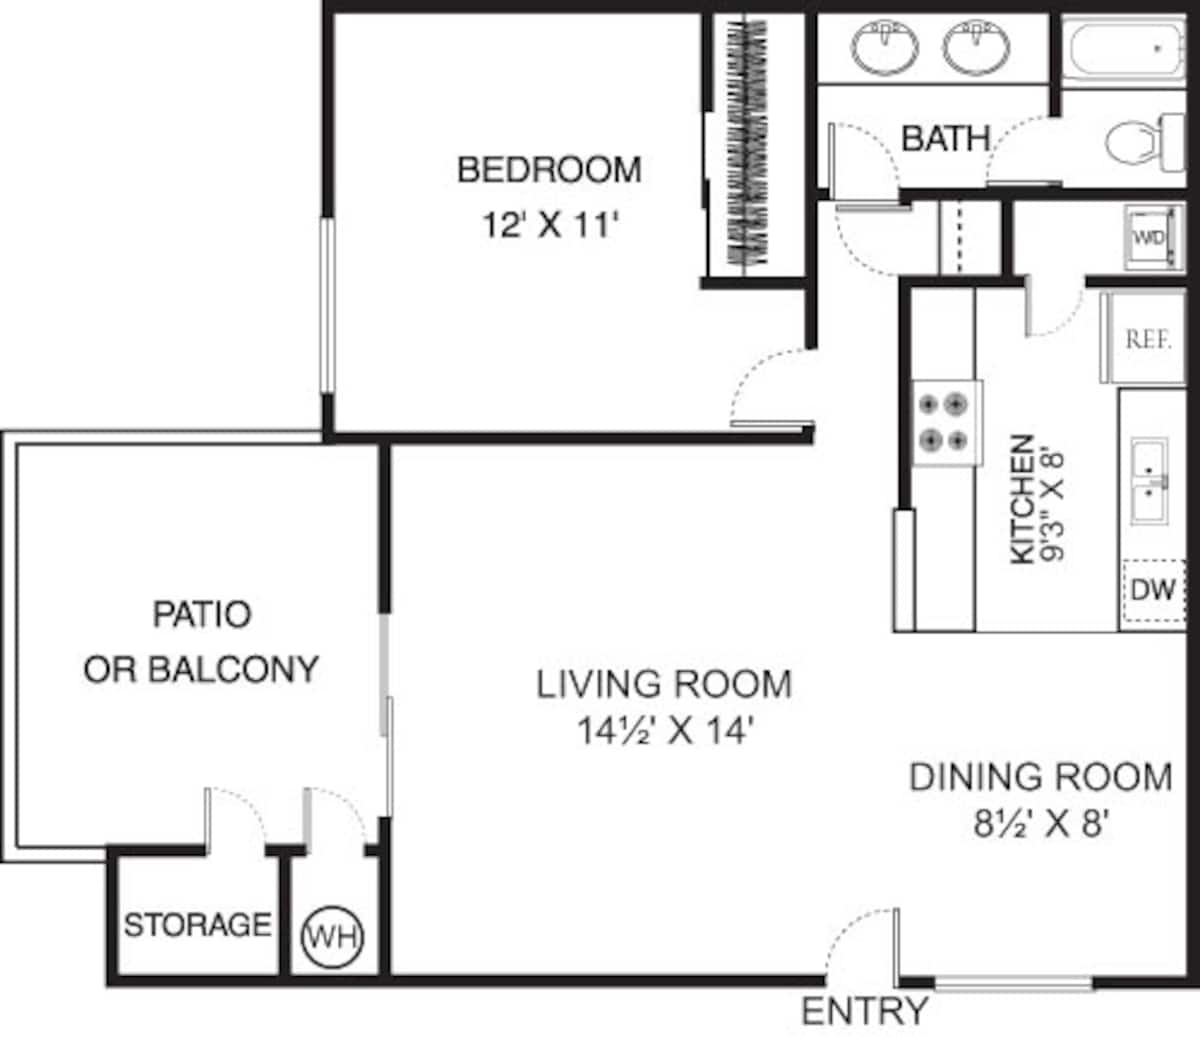 Floorplan diagram for Emerald, showing 1 bedroom